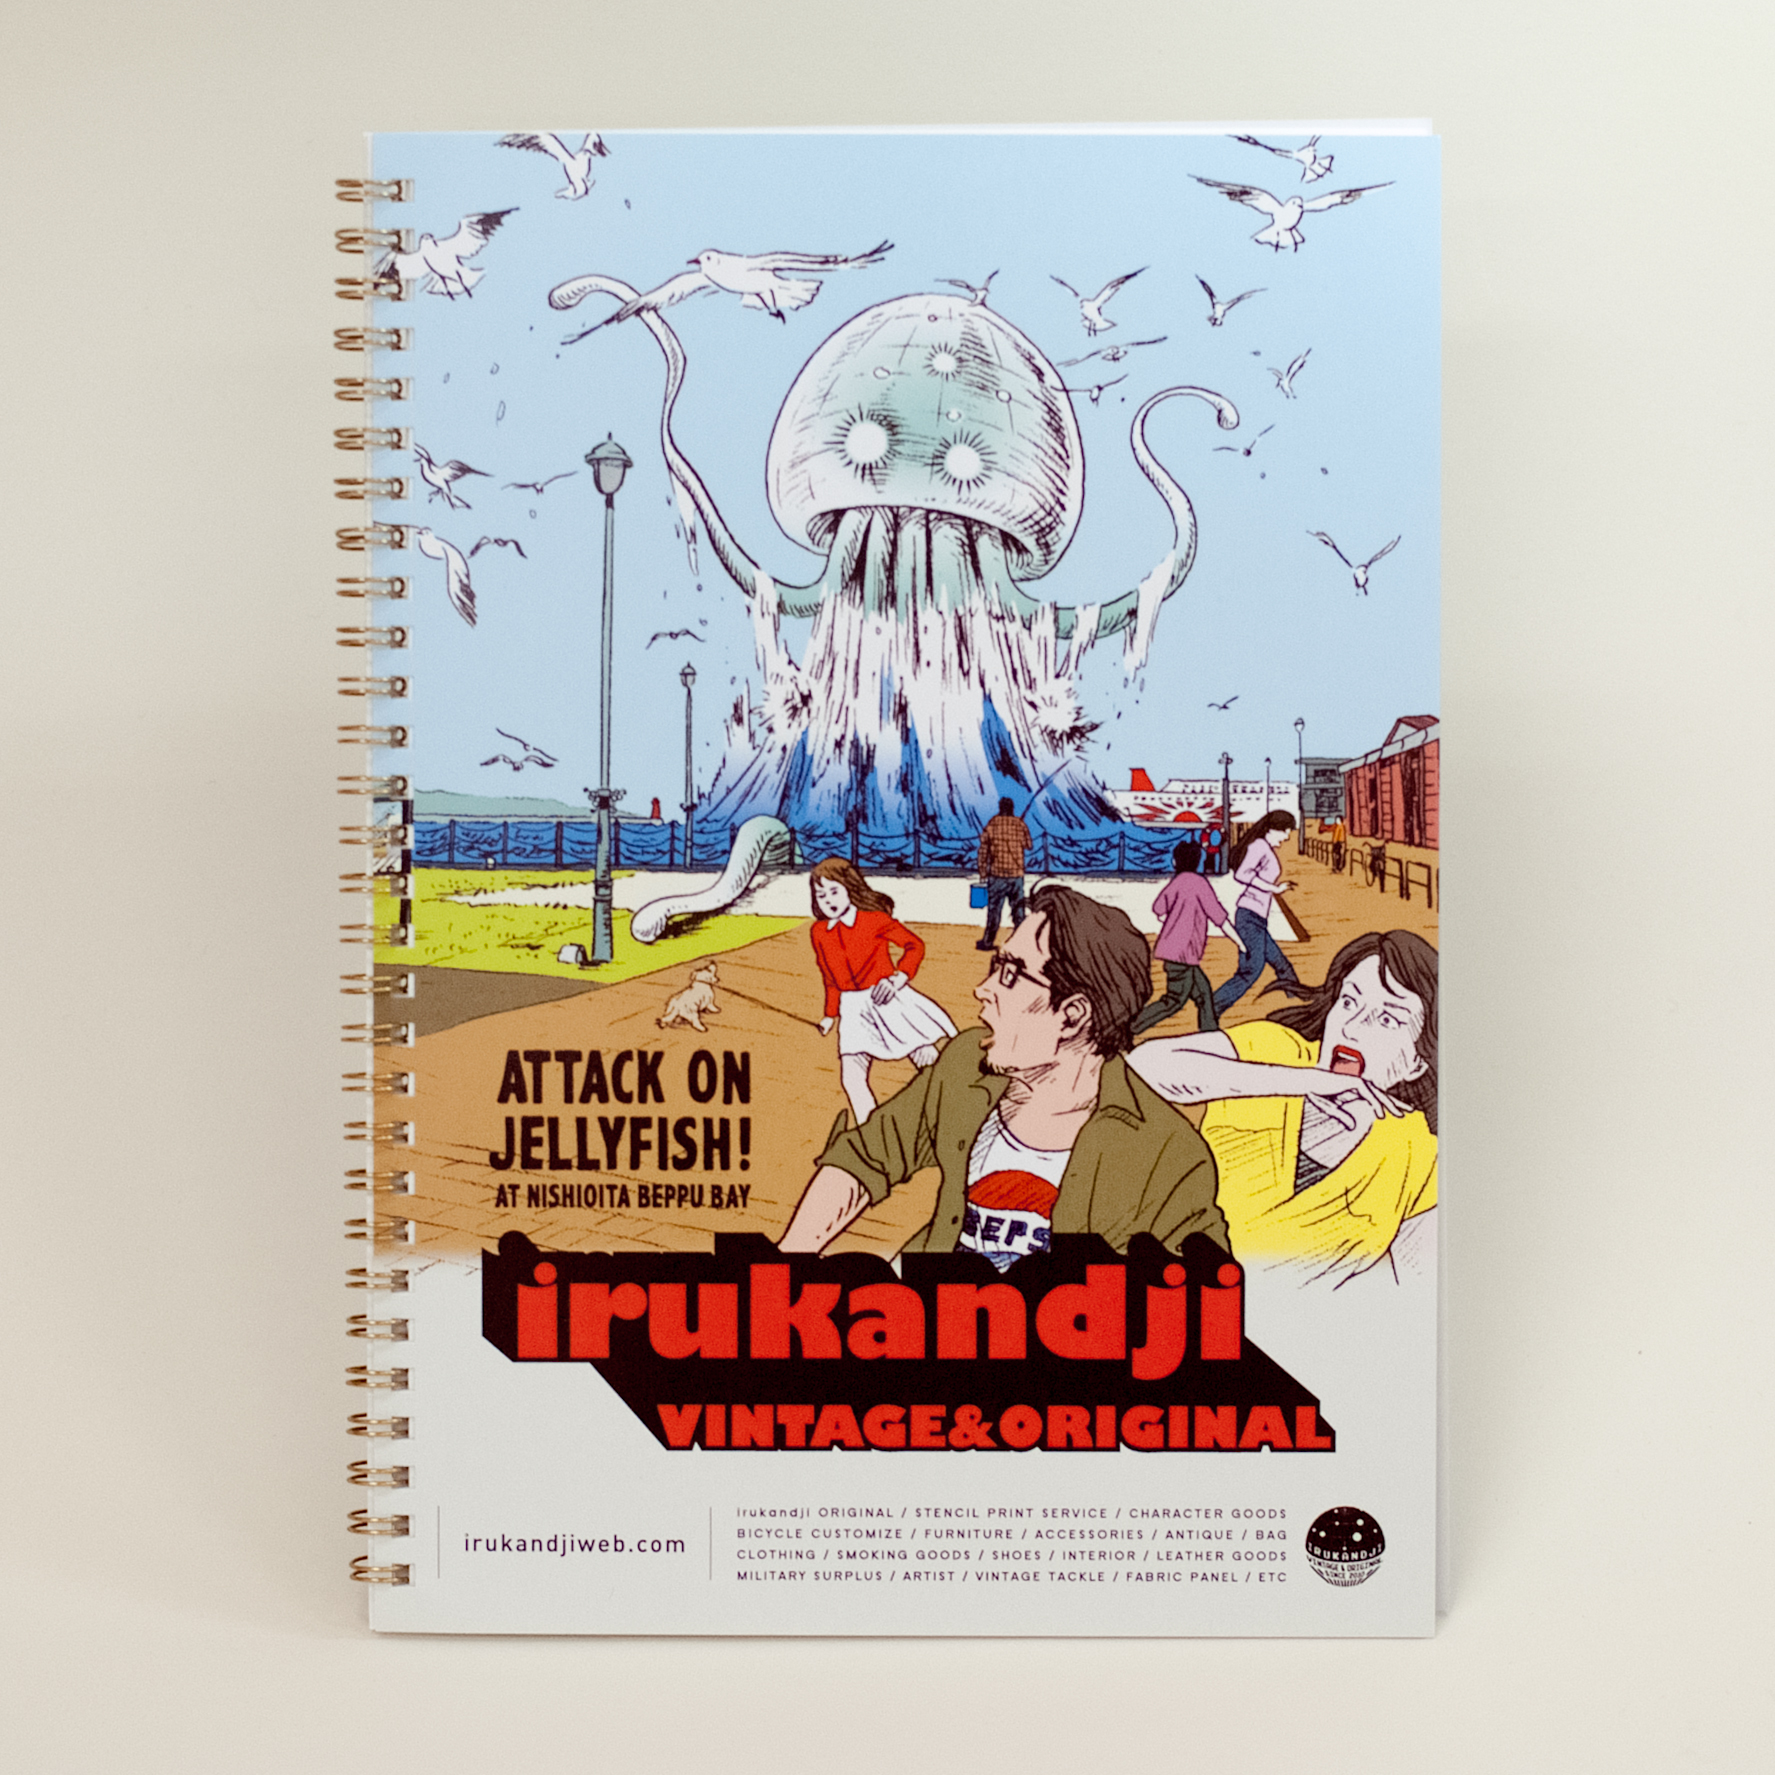 「（株）irukandji 様」製作のオリジナルノート